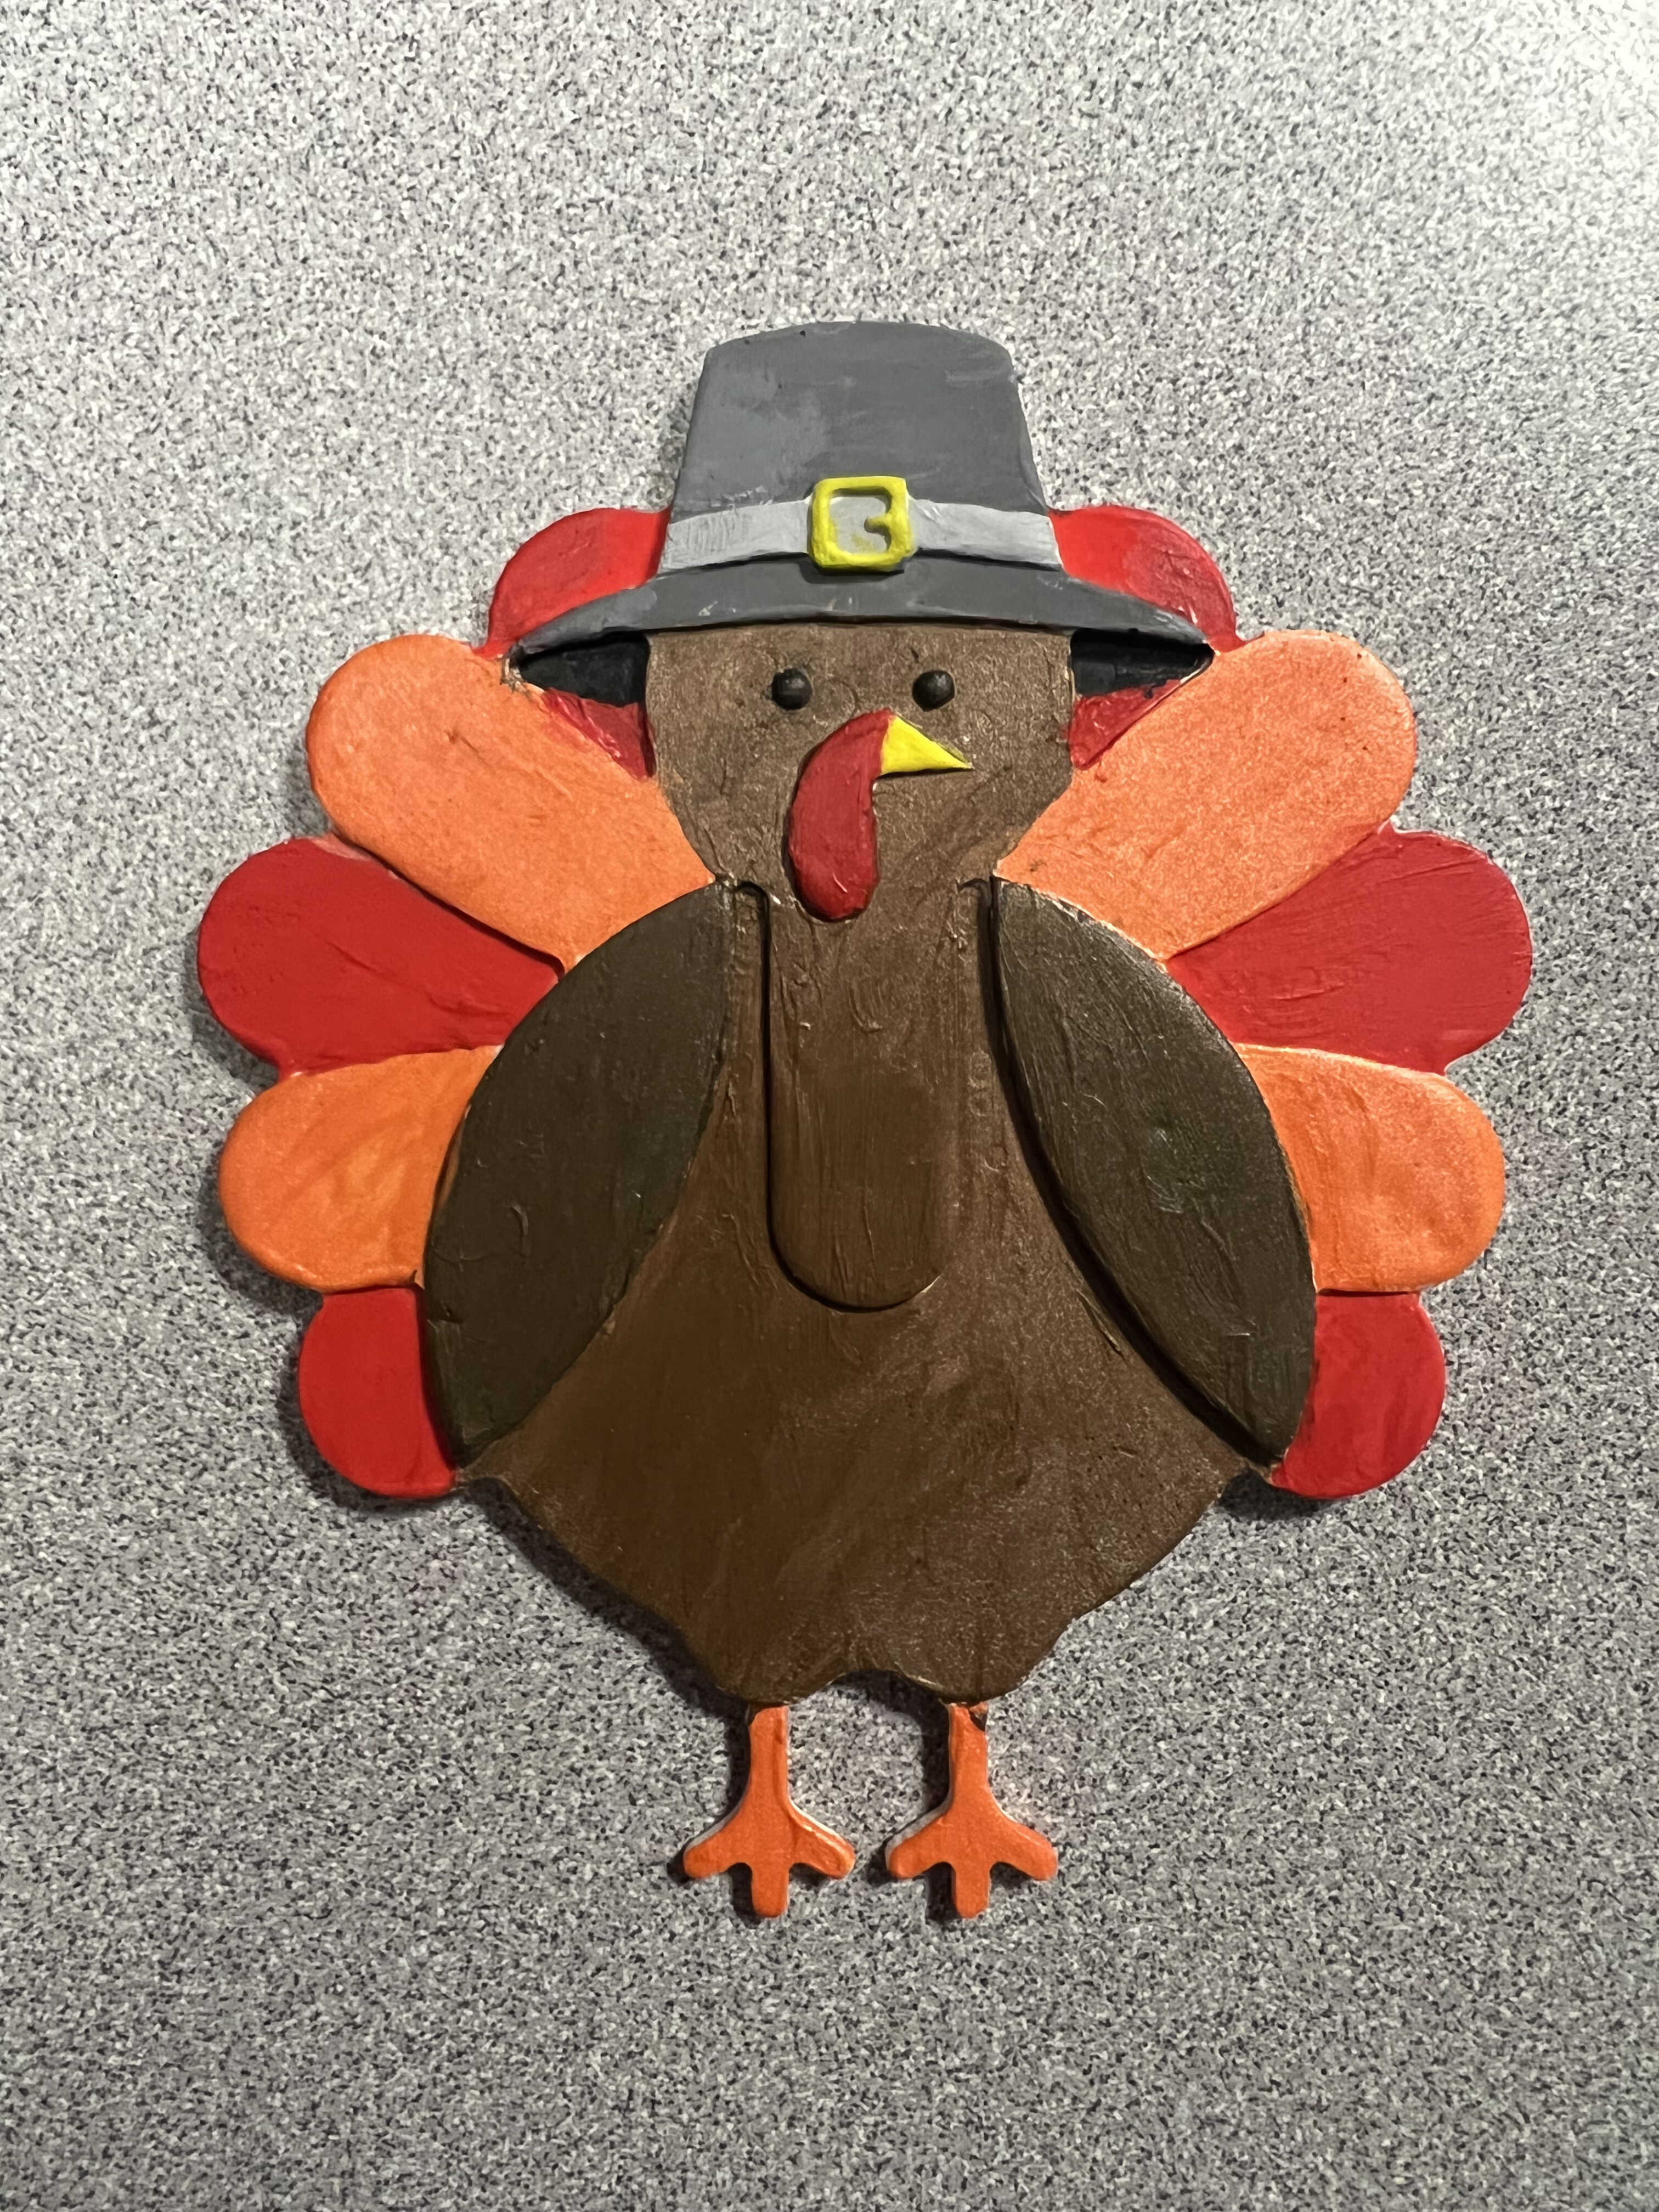 painted turkey